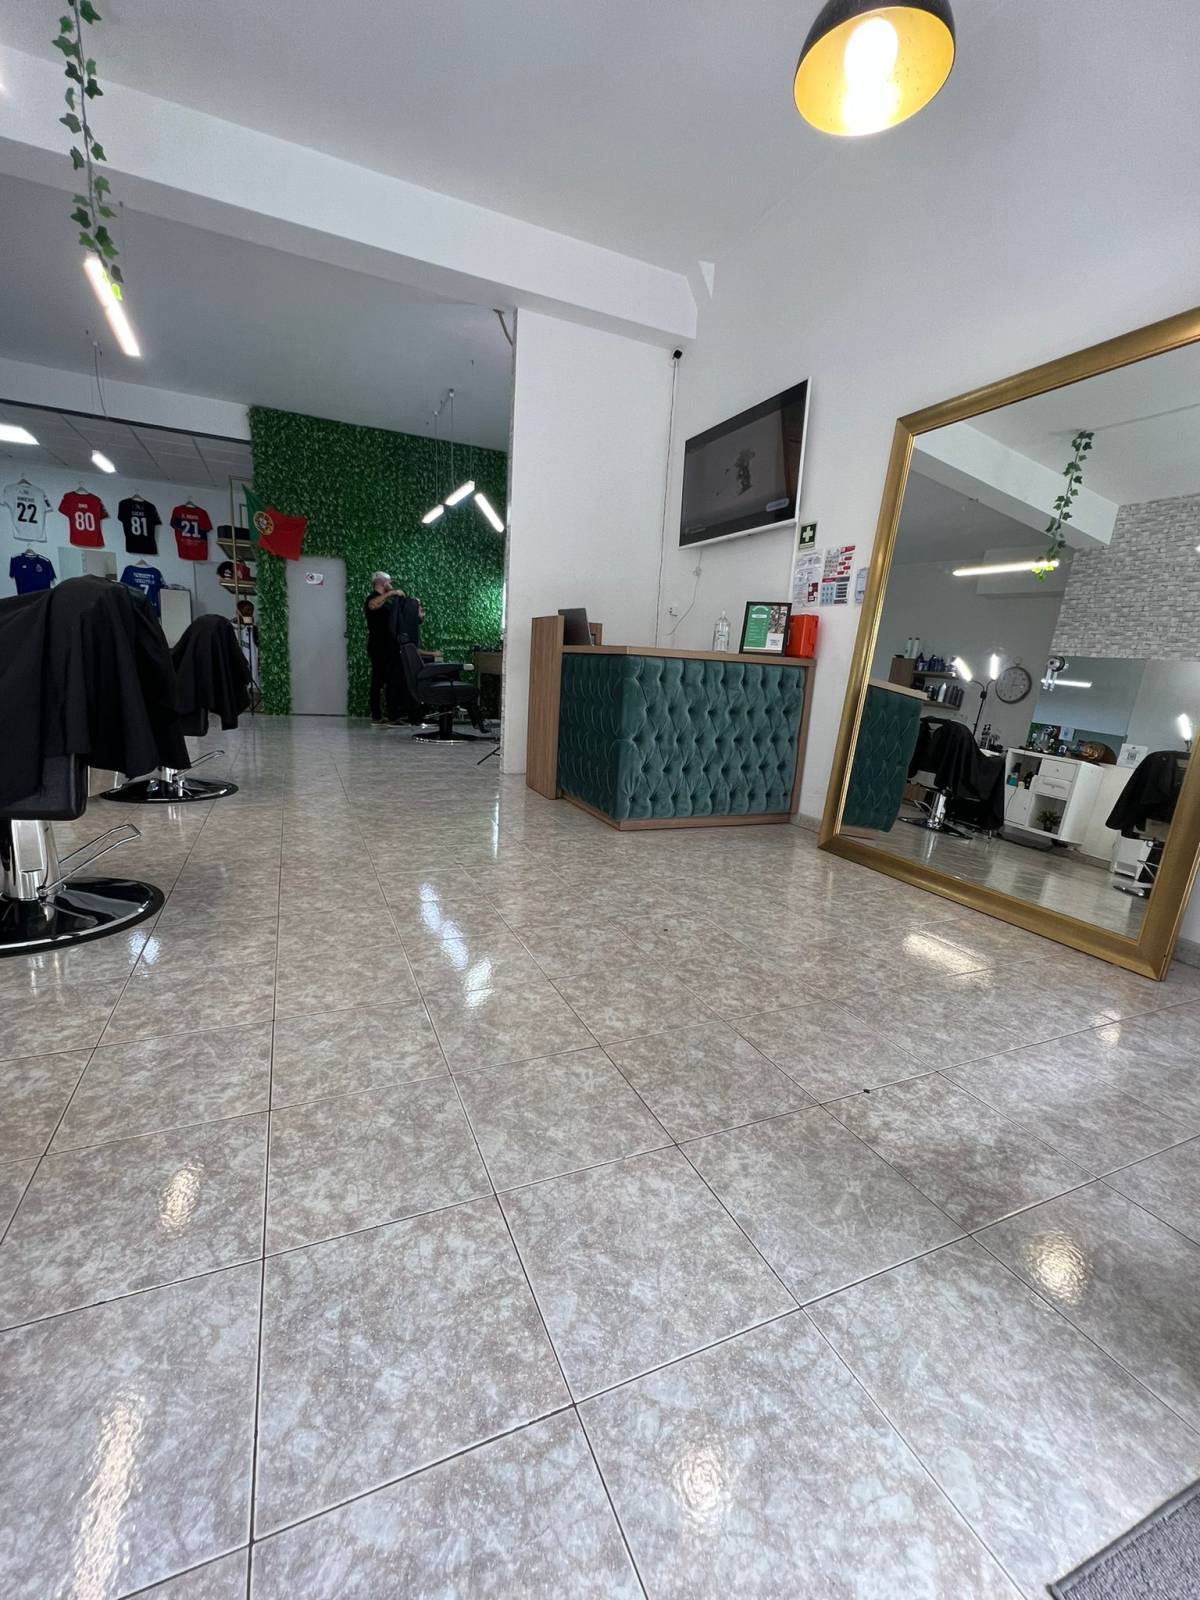 Gb barbershop - São João da Madeira - Cabeleireiros